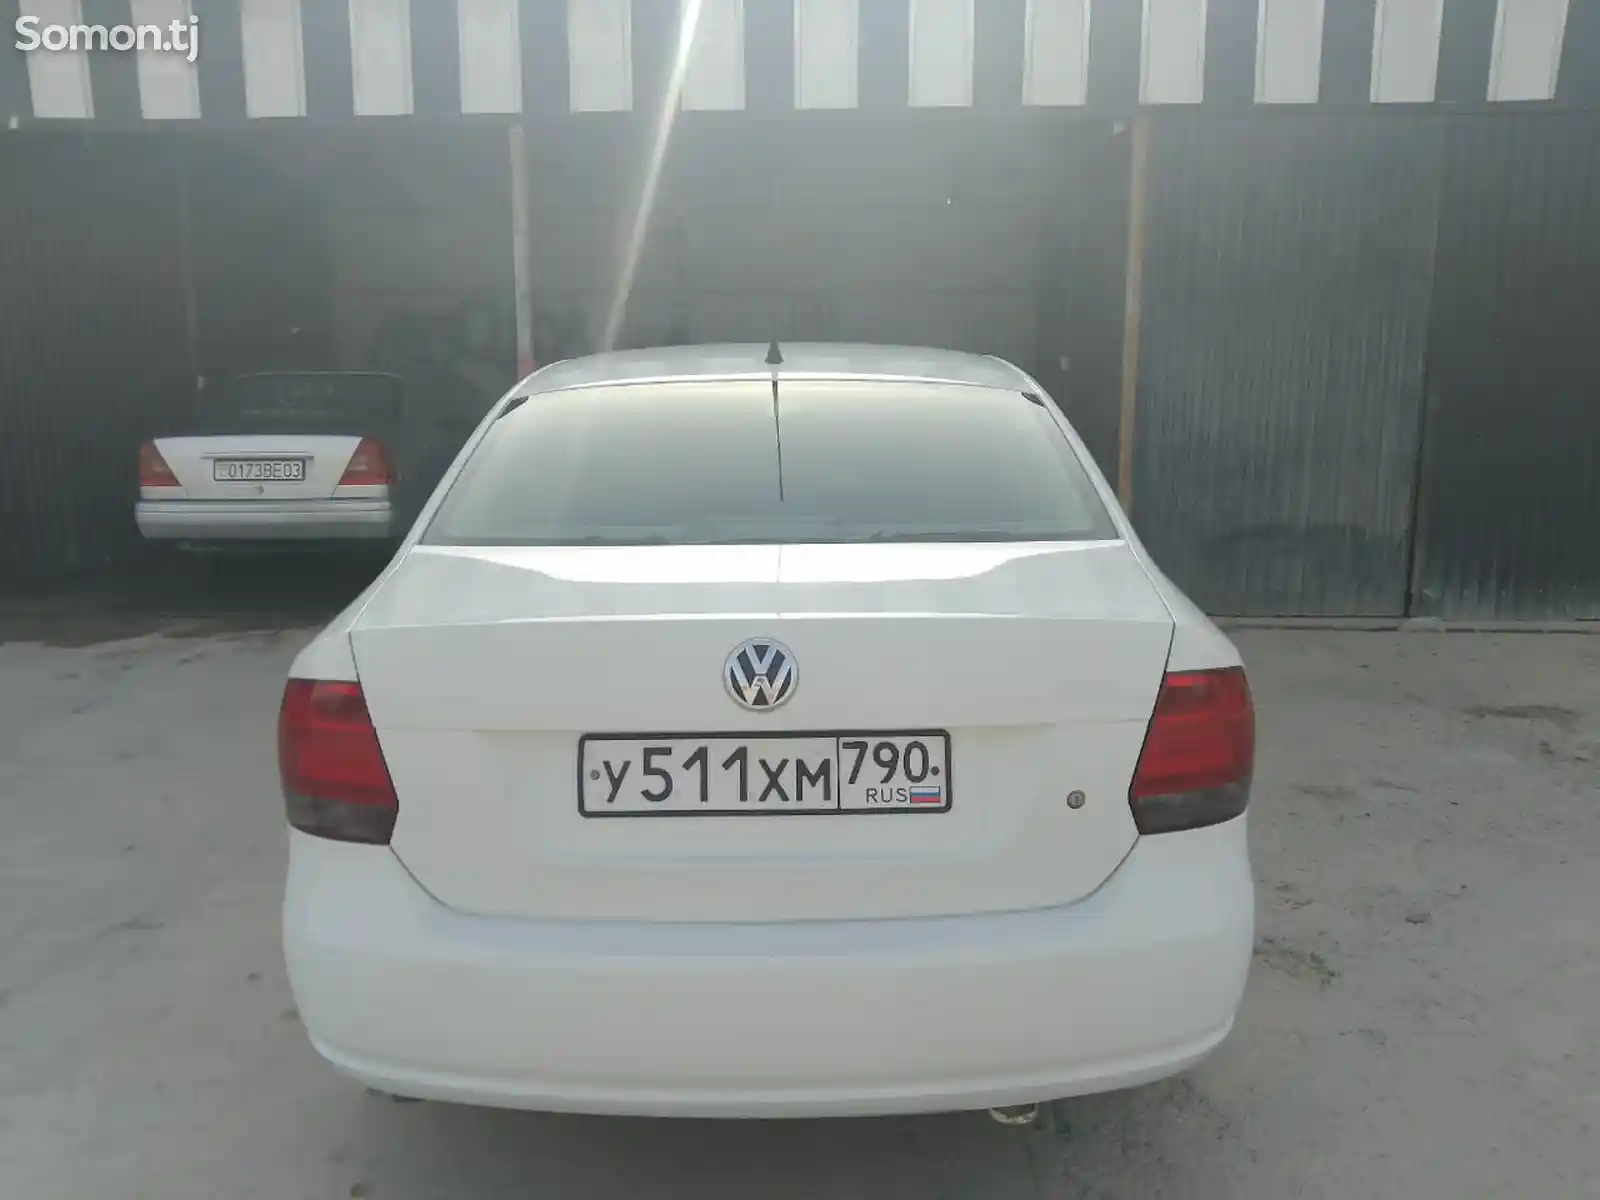 Volkswagen Polo, 2011-2